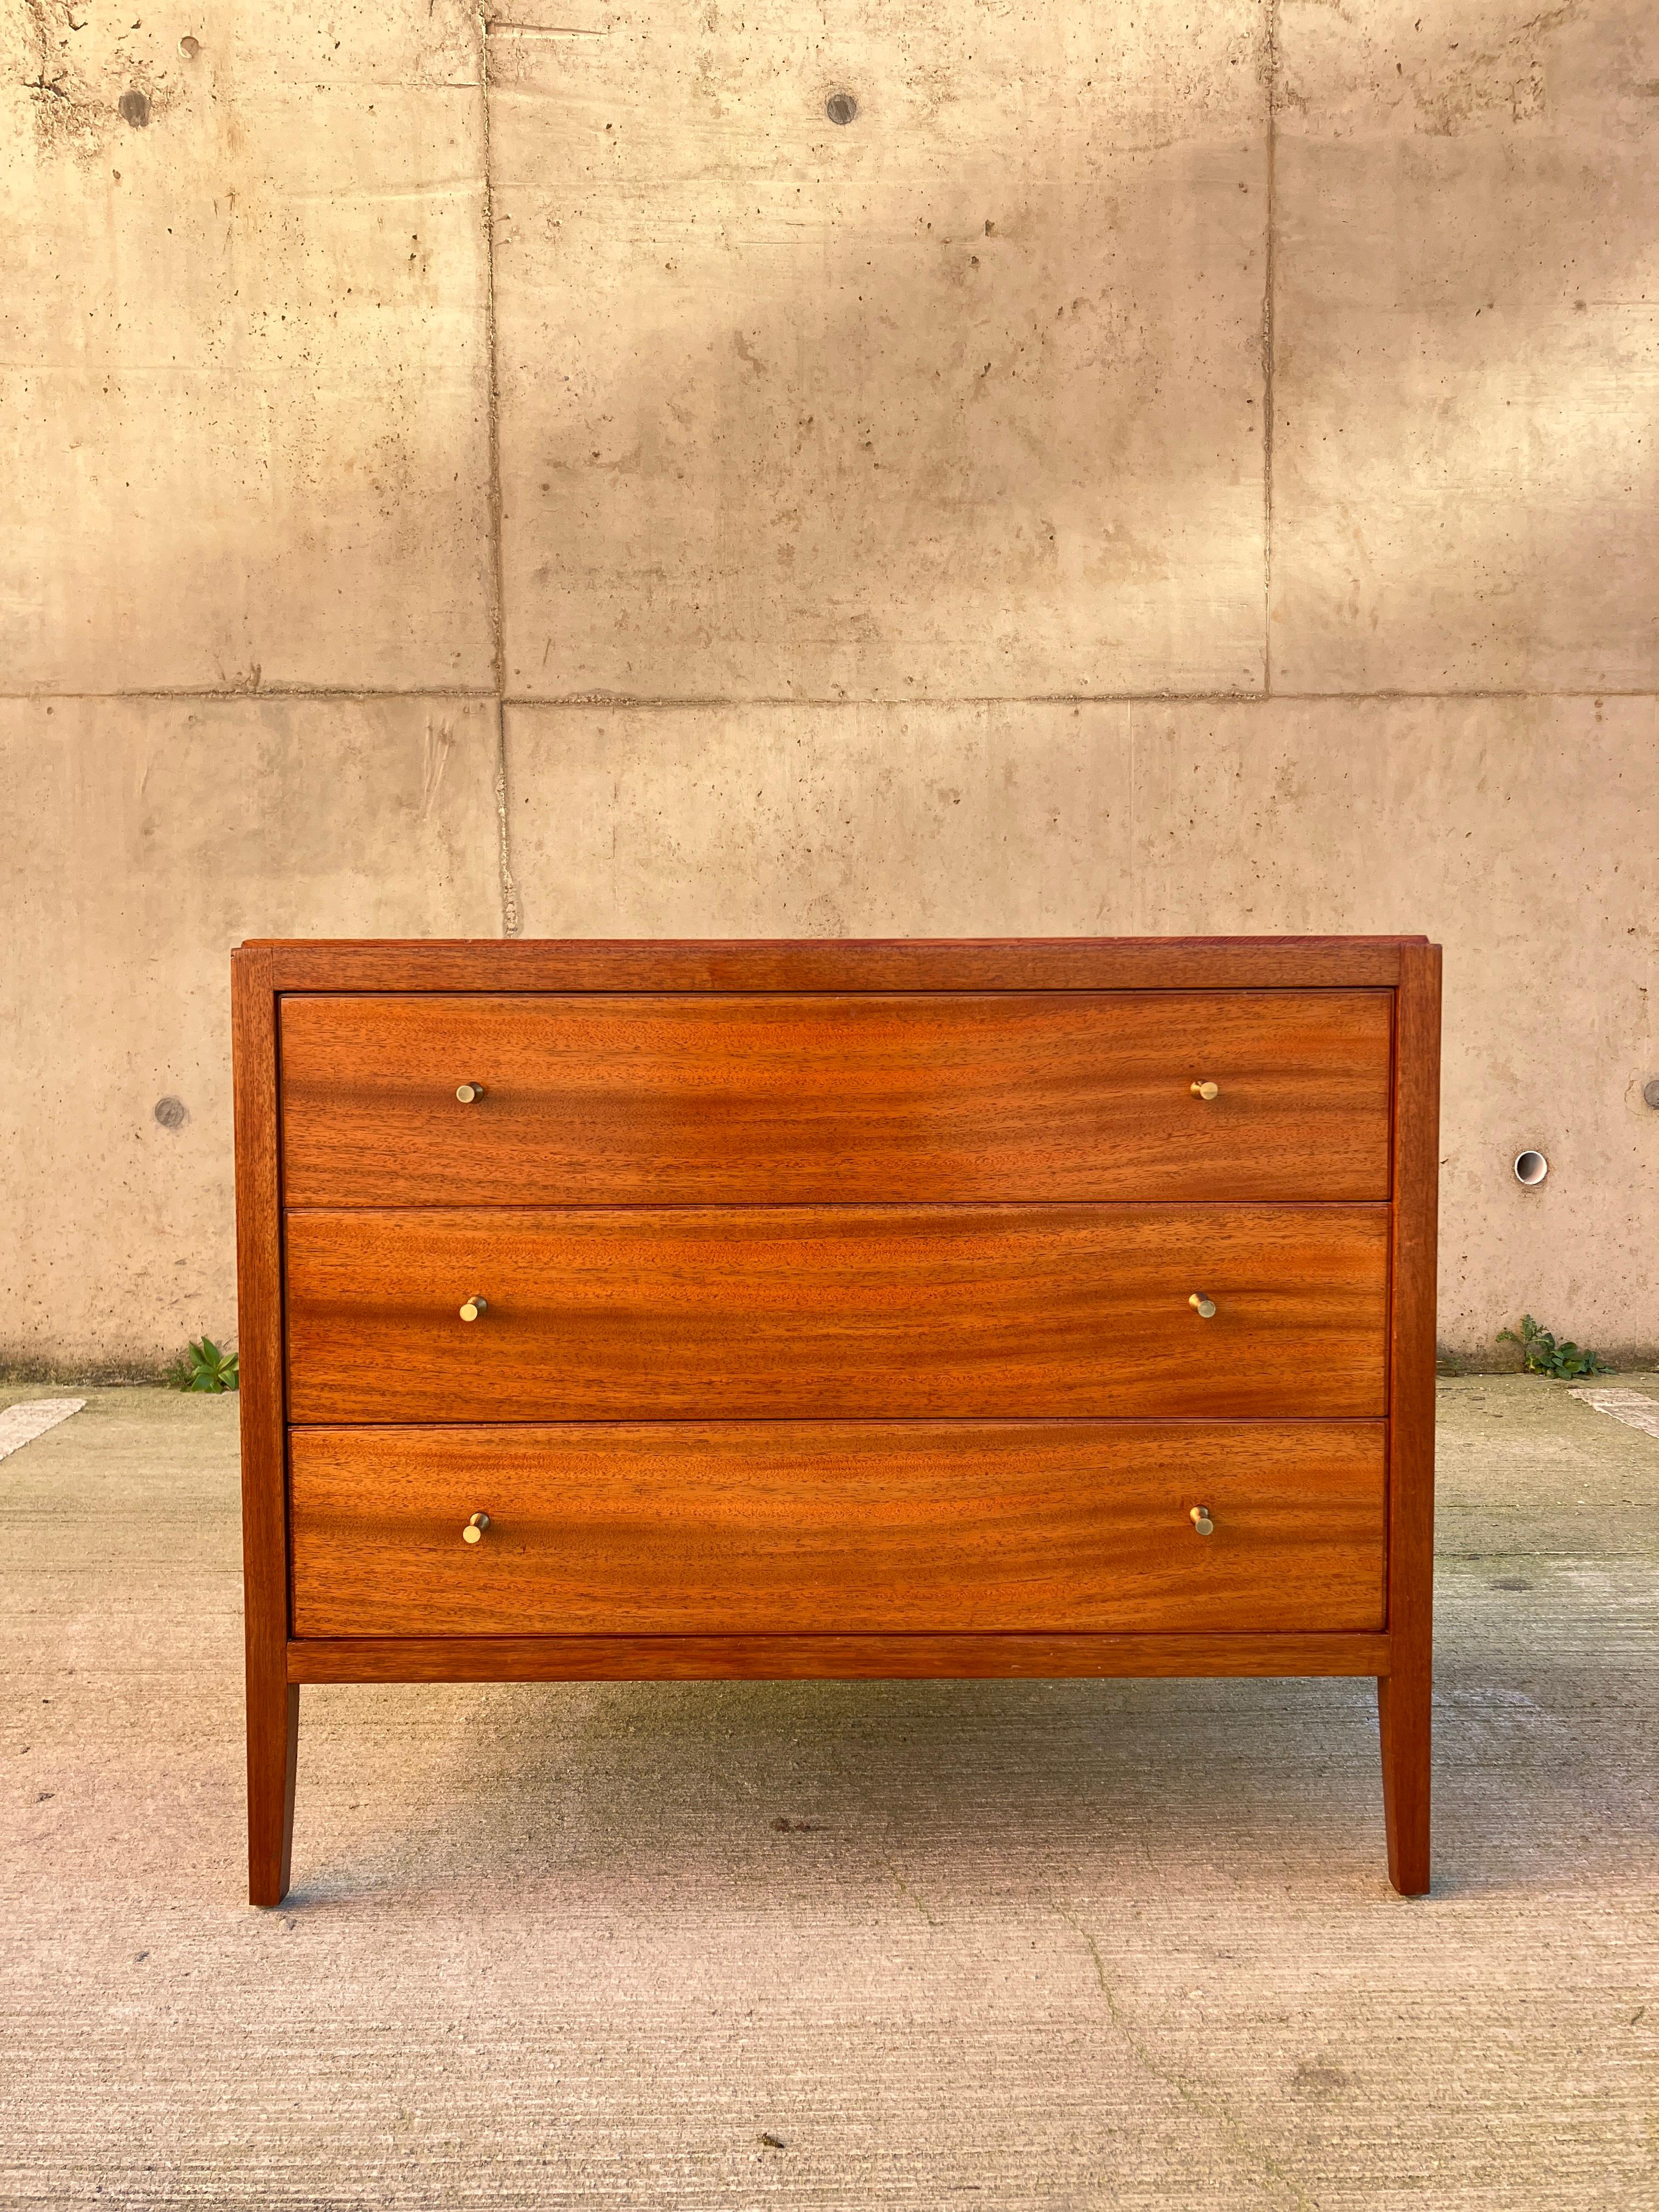 Un meuble étonnant des années 60 Cette commode a été fabriquée par Loughborough Furniture pour être vendue dans le magasin de meubles Heal s à Londres. Heal's était réputé pour sa gamme de meubles de haute qualité.  La qualité de fabrication de ces